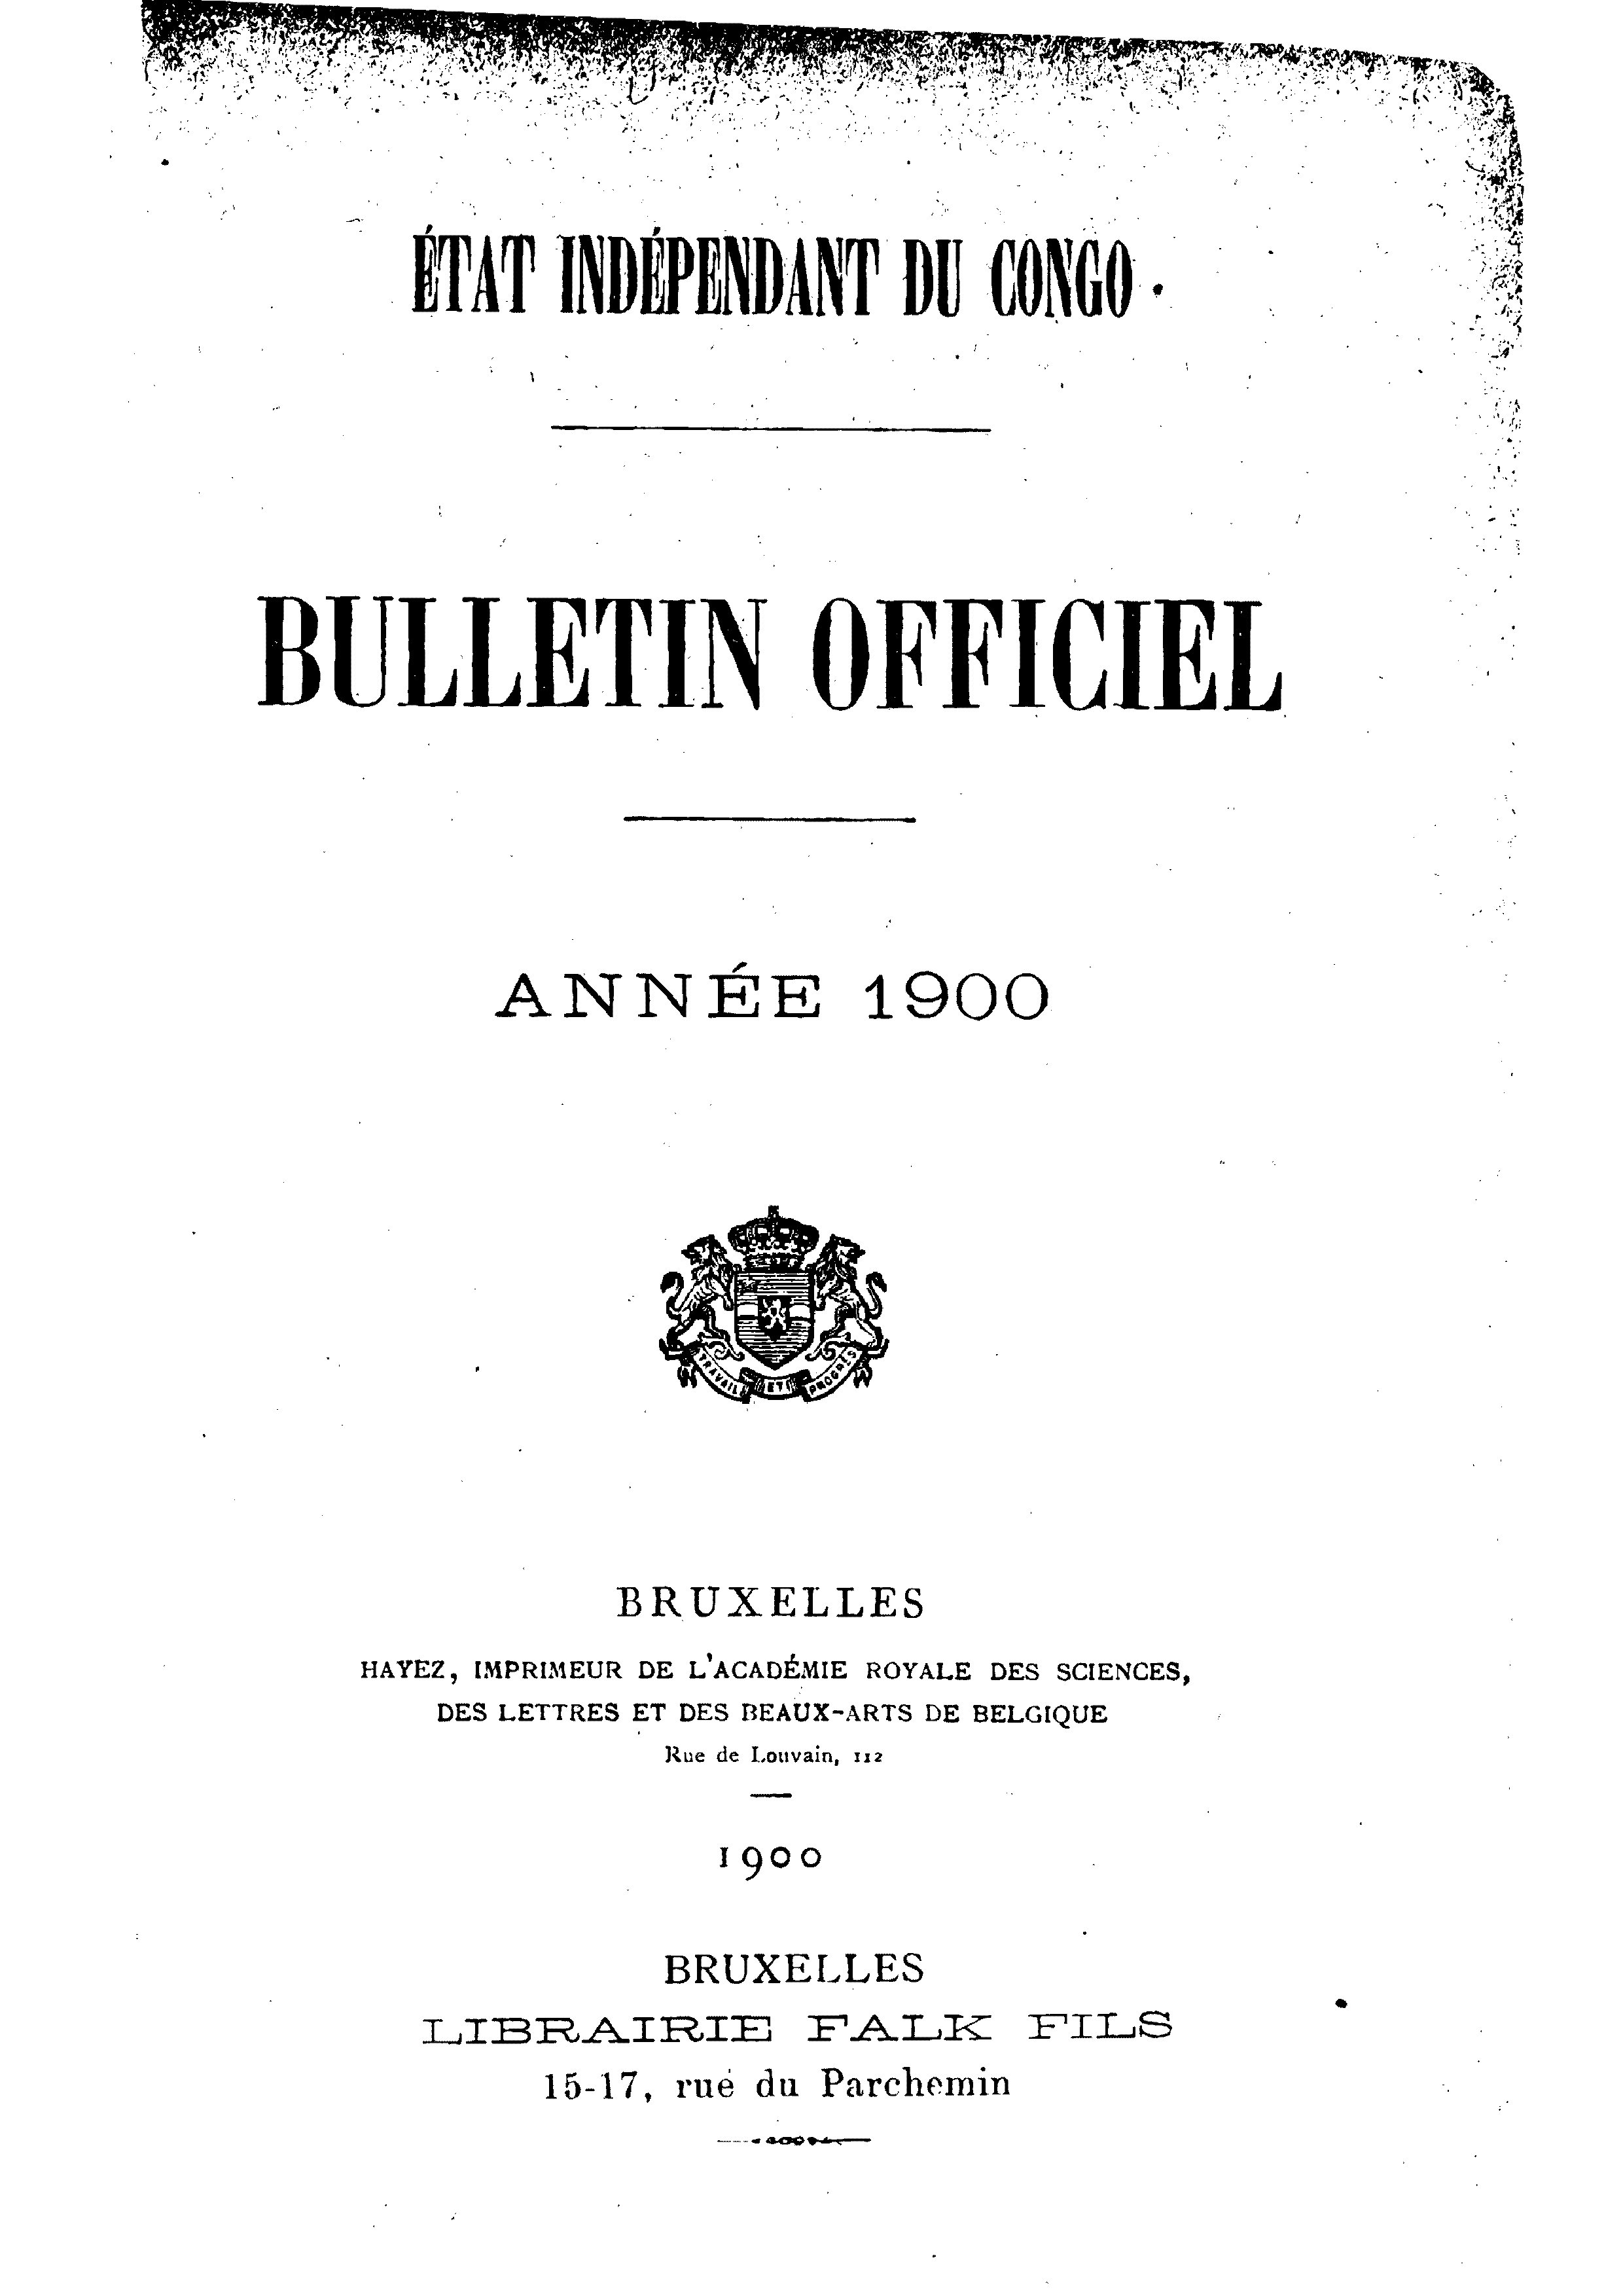 Book cover 202106132415: Etat Indépendant du Congo - roi Léopold II | Etat Indépendant du Congo - Bulletin Officiel – Année 1900